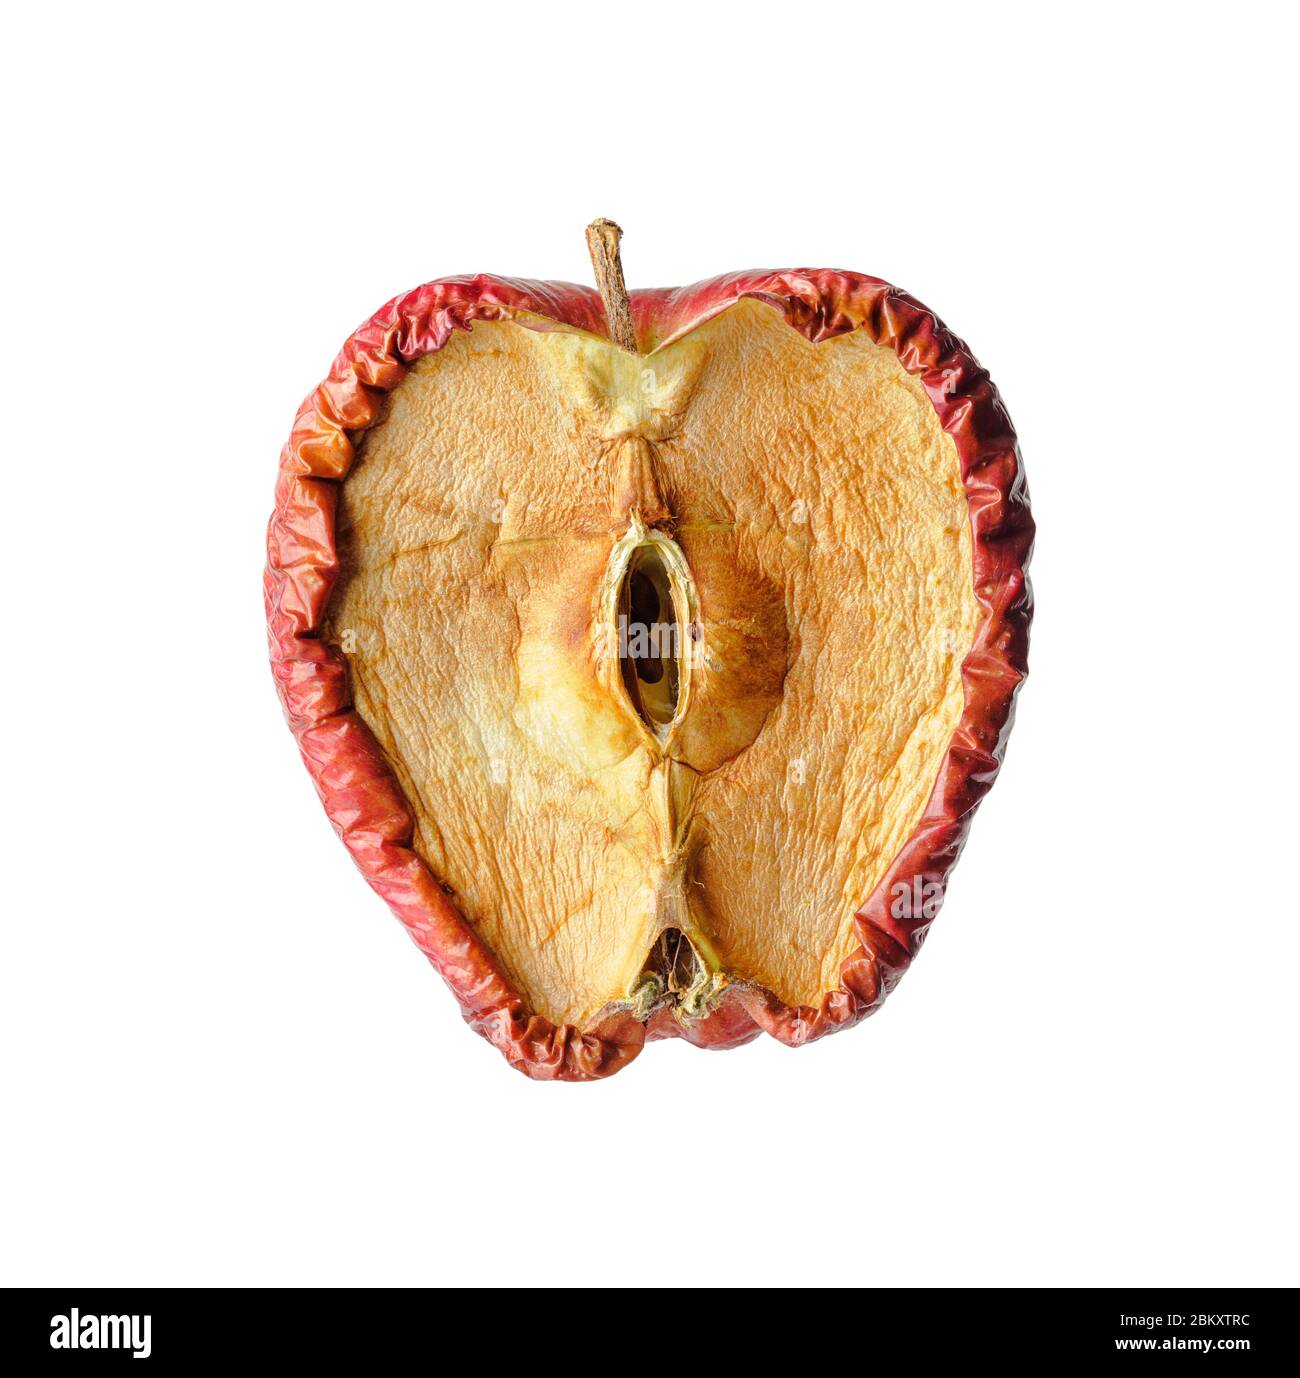 Fauler Apfel in der Hälfte geschnitten, Alterung oder Krankheit Konzept Stockfoto